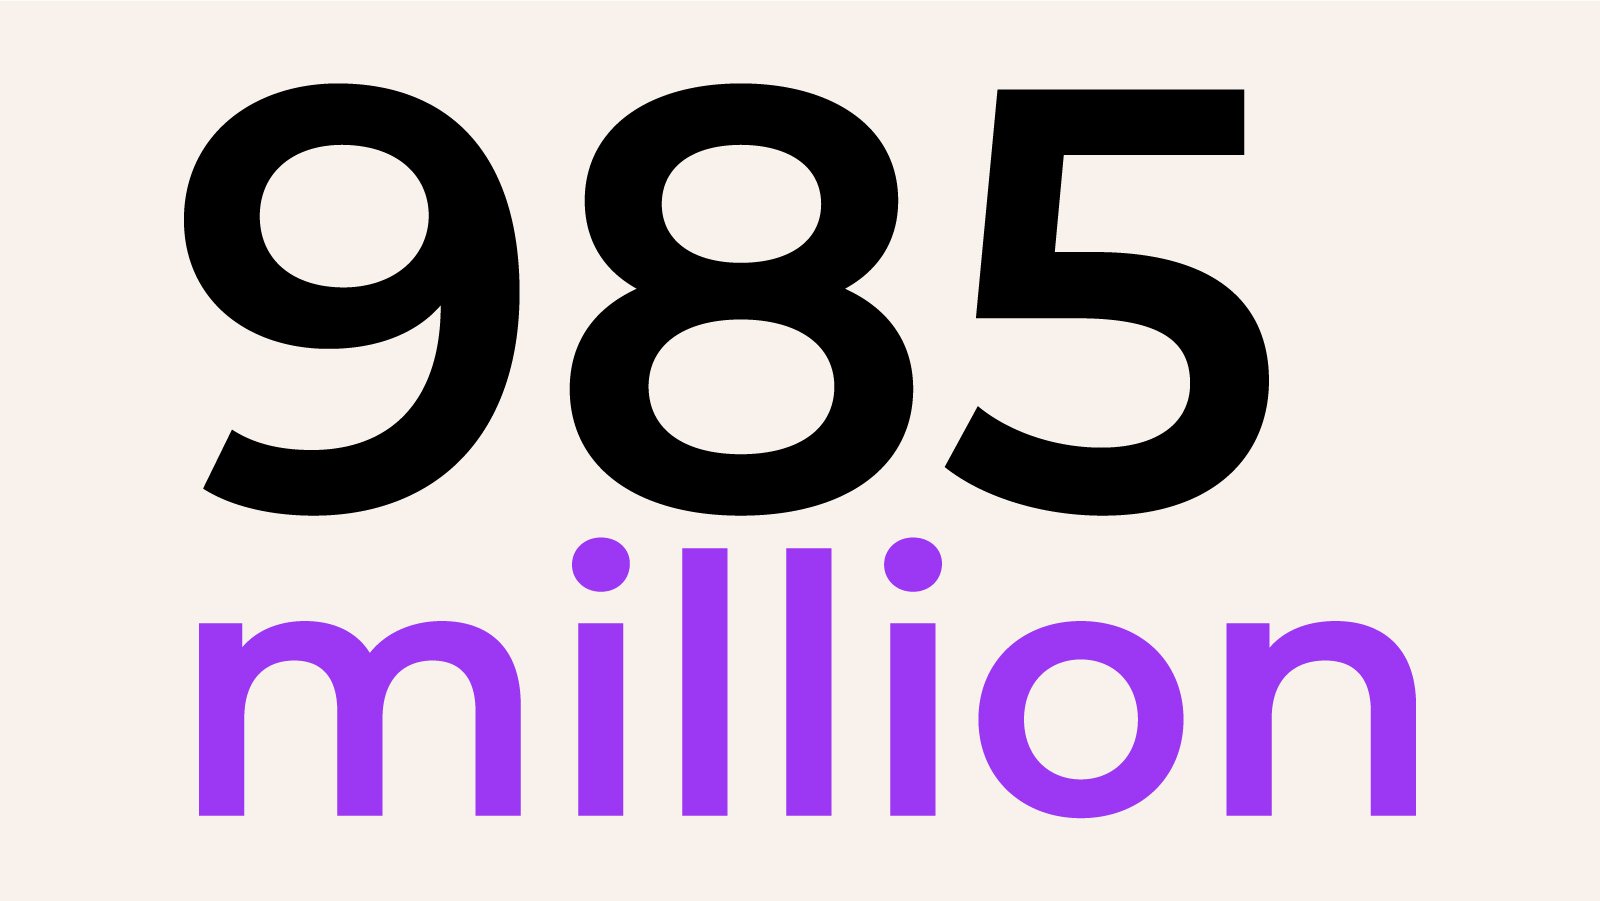 985 million